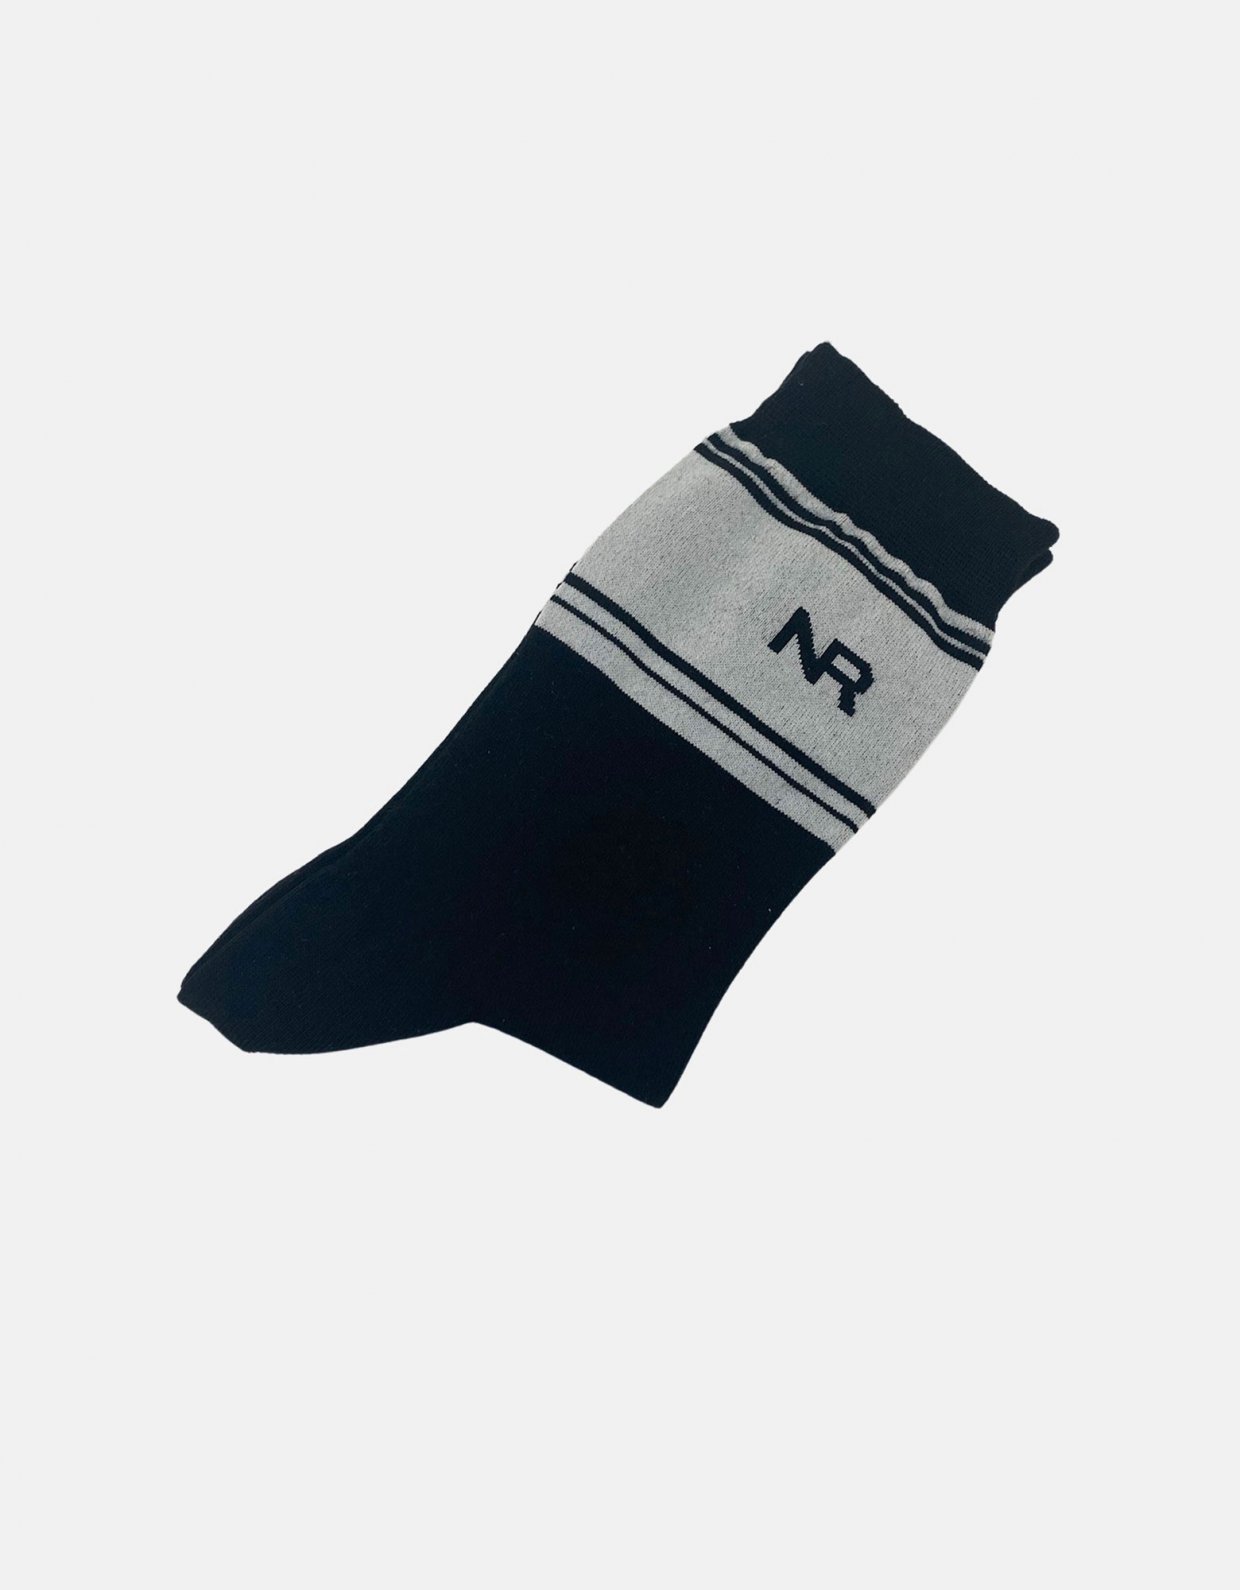 Nadia Rapti Stripes n logo socks black